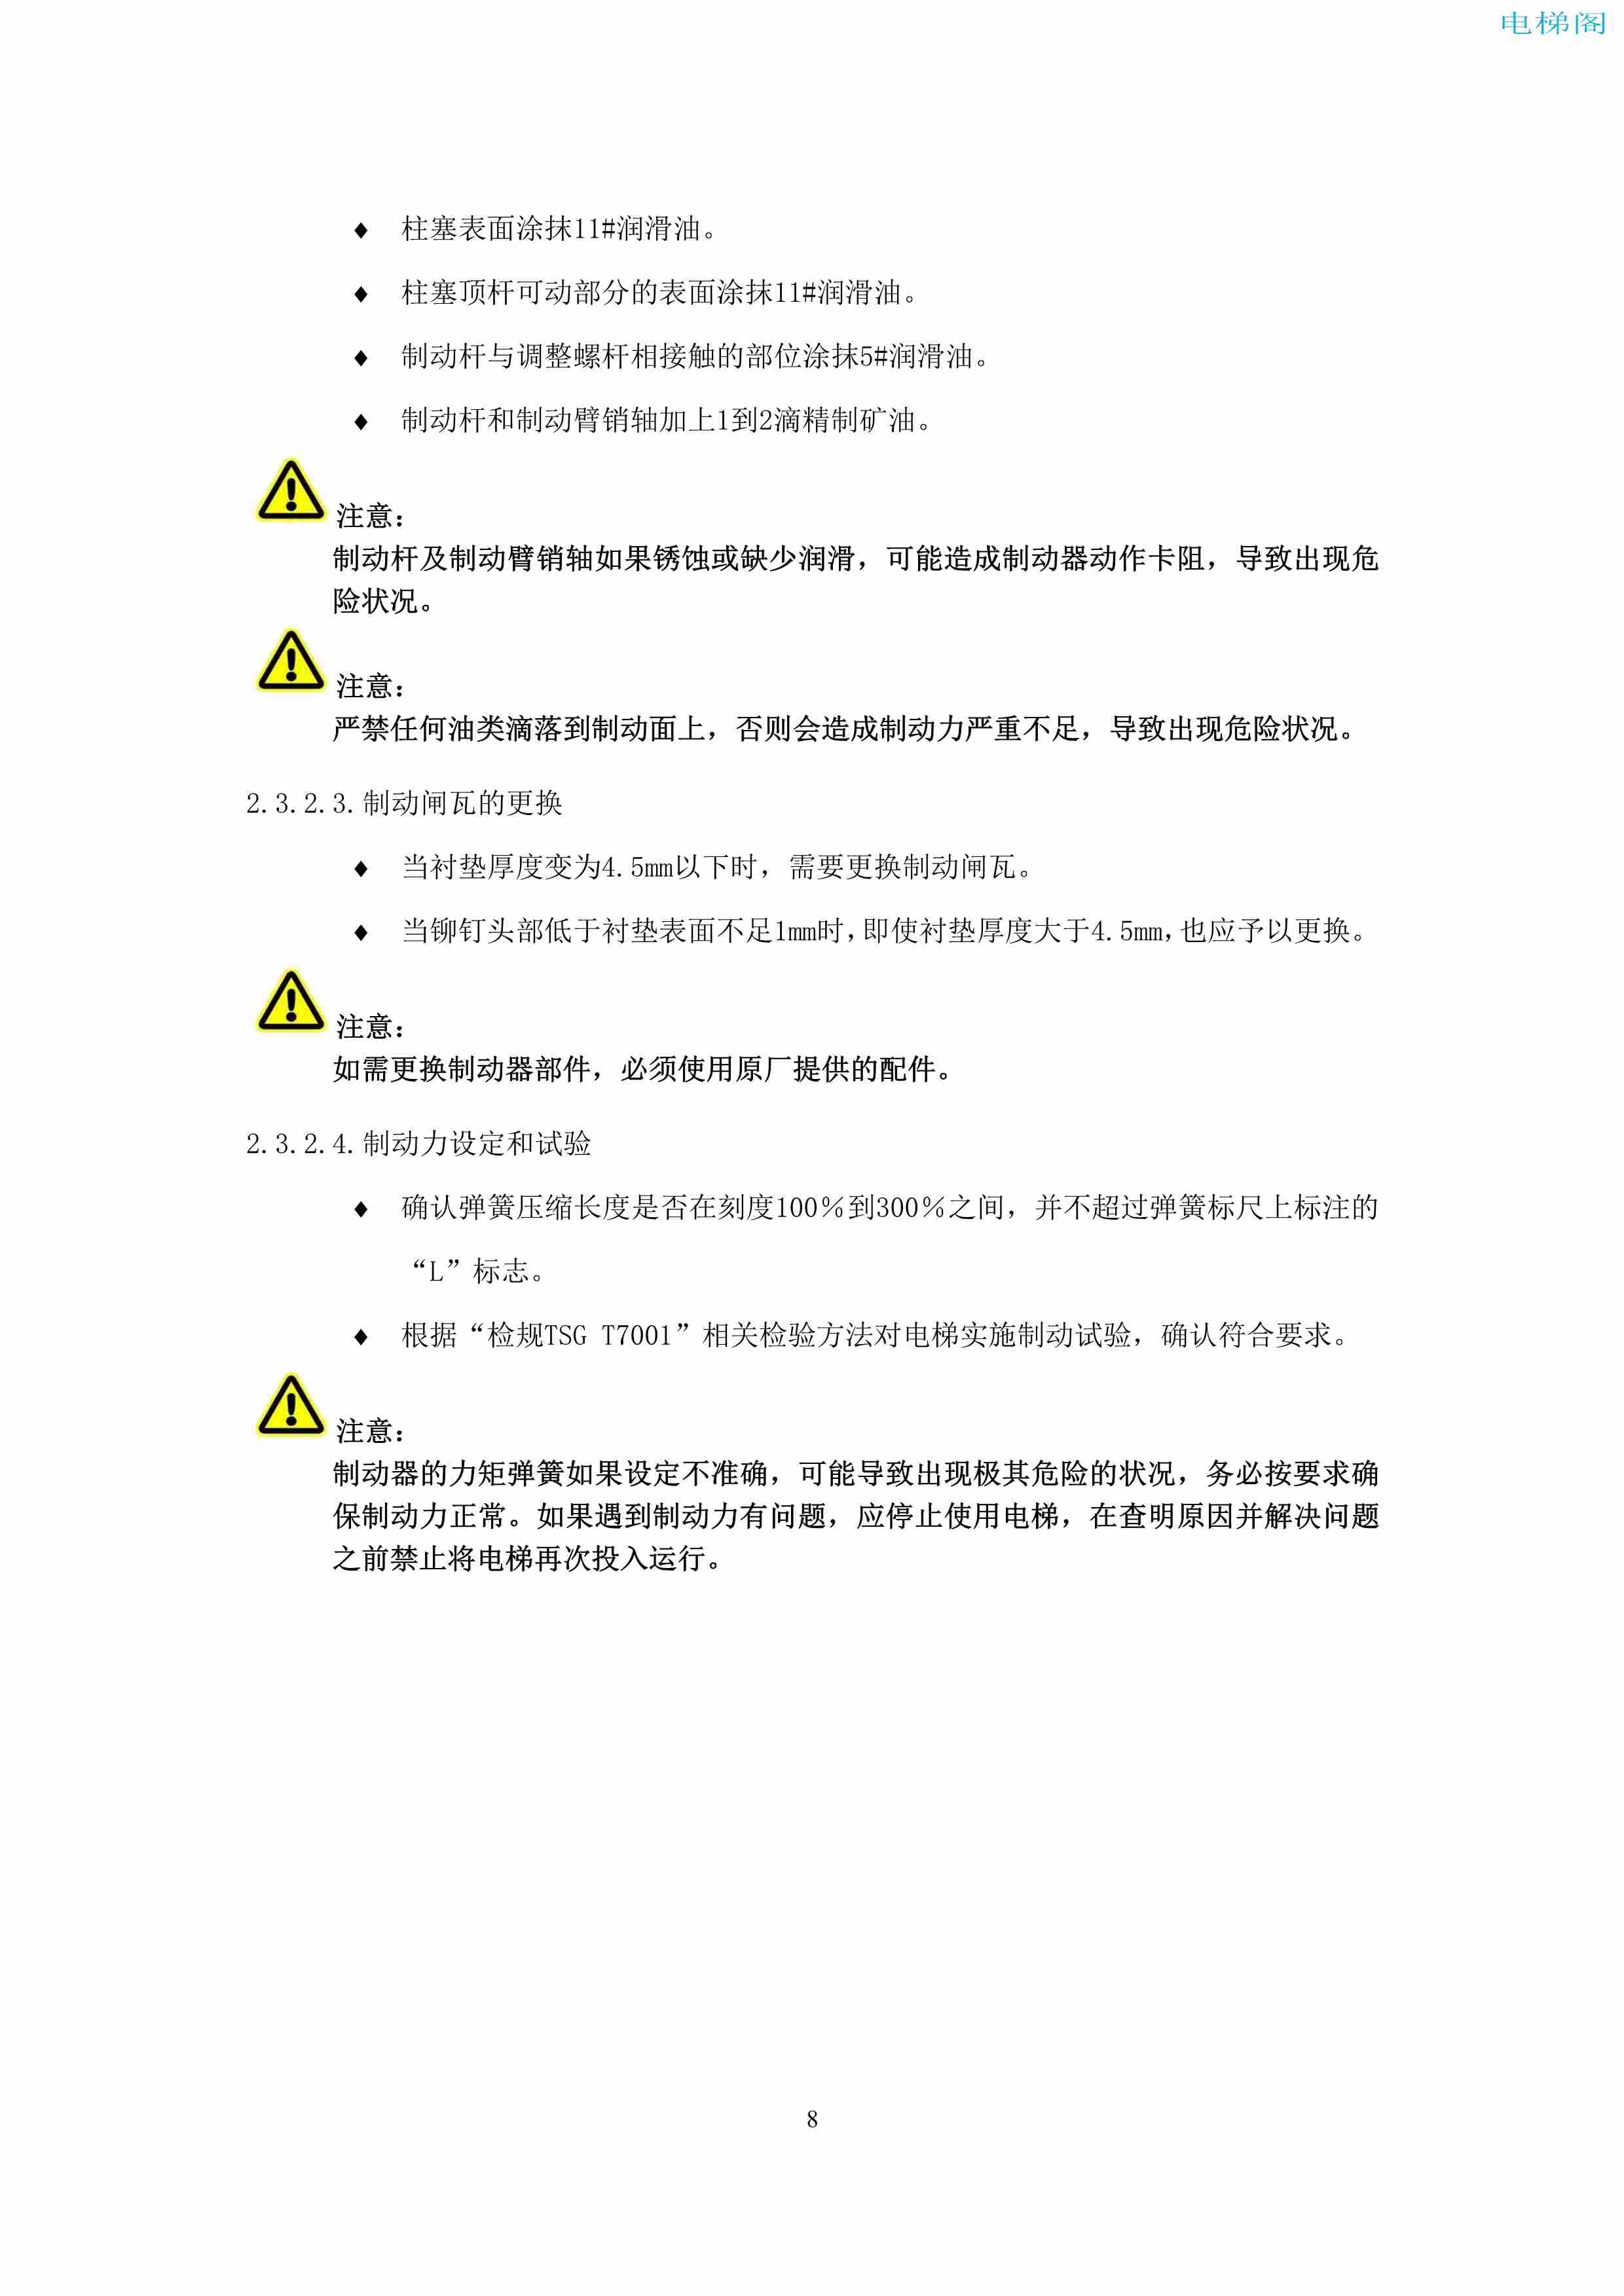 上海三菱电梯有限公司电梯制动器维护作业要领汇编_10.jpg